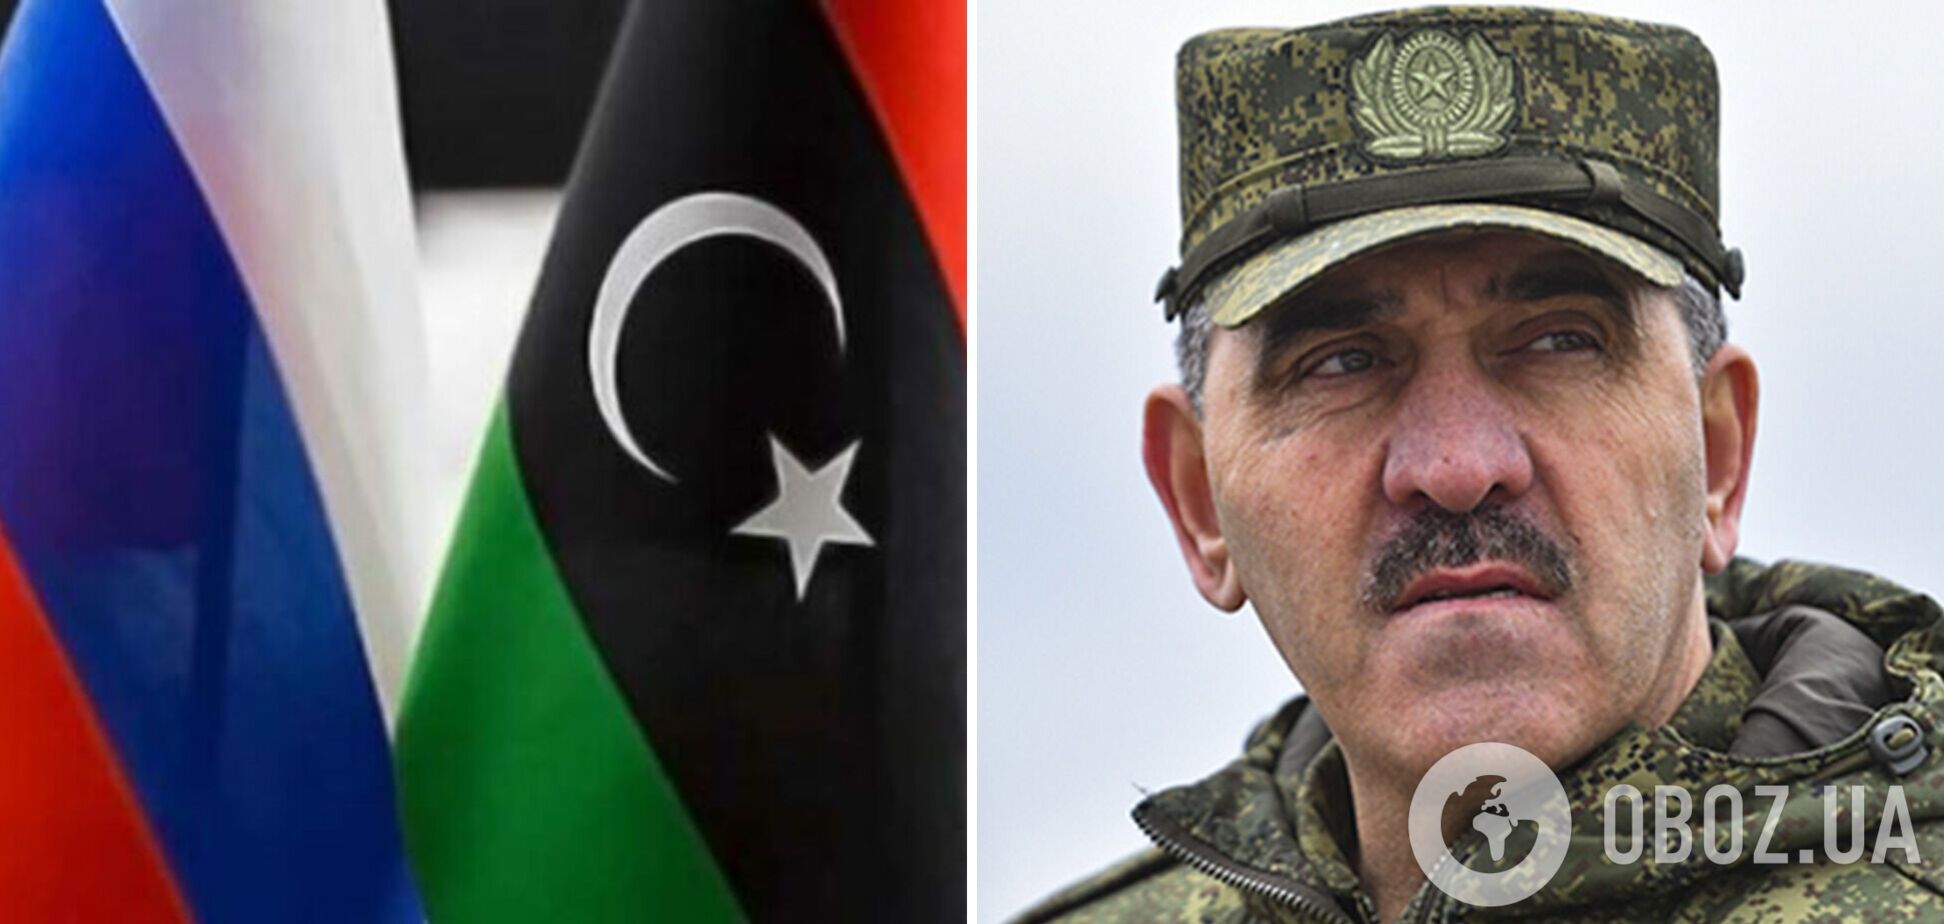 Прилетел просить оружие? Заместитель Шойгу прибыл в Ливию по приглашению Халифы Хафтара. Видео